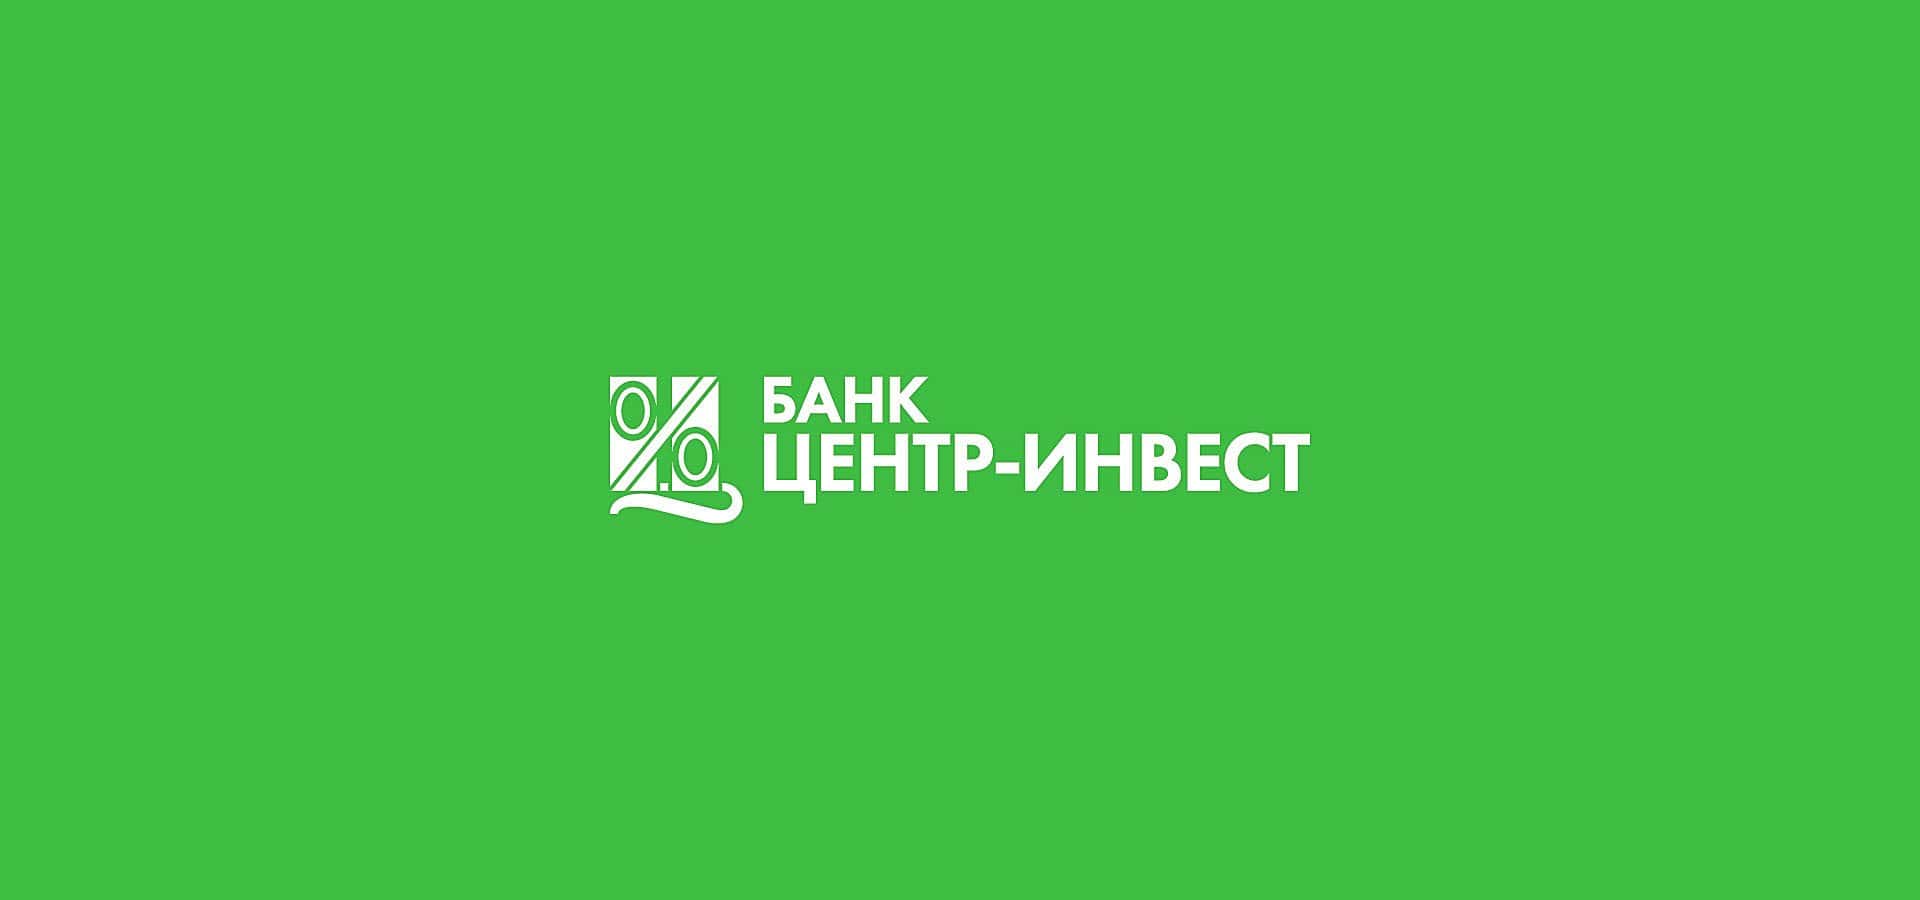 Обновленный логотип одного из крупнейших банков на юге России